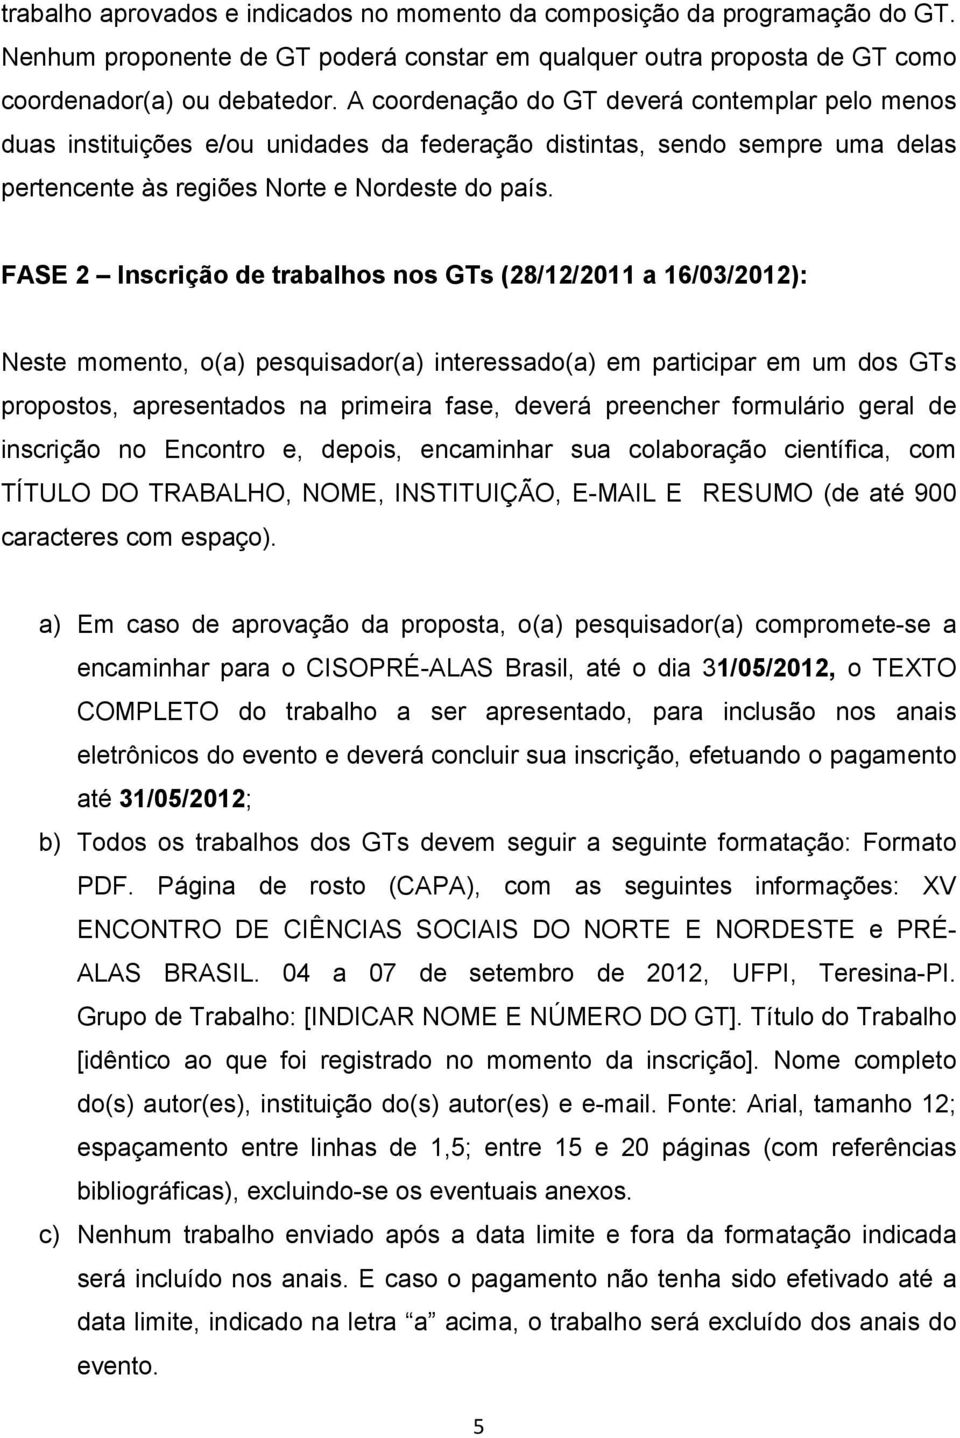 FASE 2 Inscrição de trabalhos nos GTs (28/12/2011 a 16/03/2012): Neste momento, o(a) pesquisador(a) interessado(a) em participar em um dos GTs propostos, apresentados na primeira fase, deverá